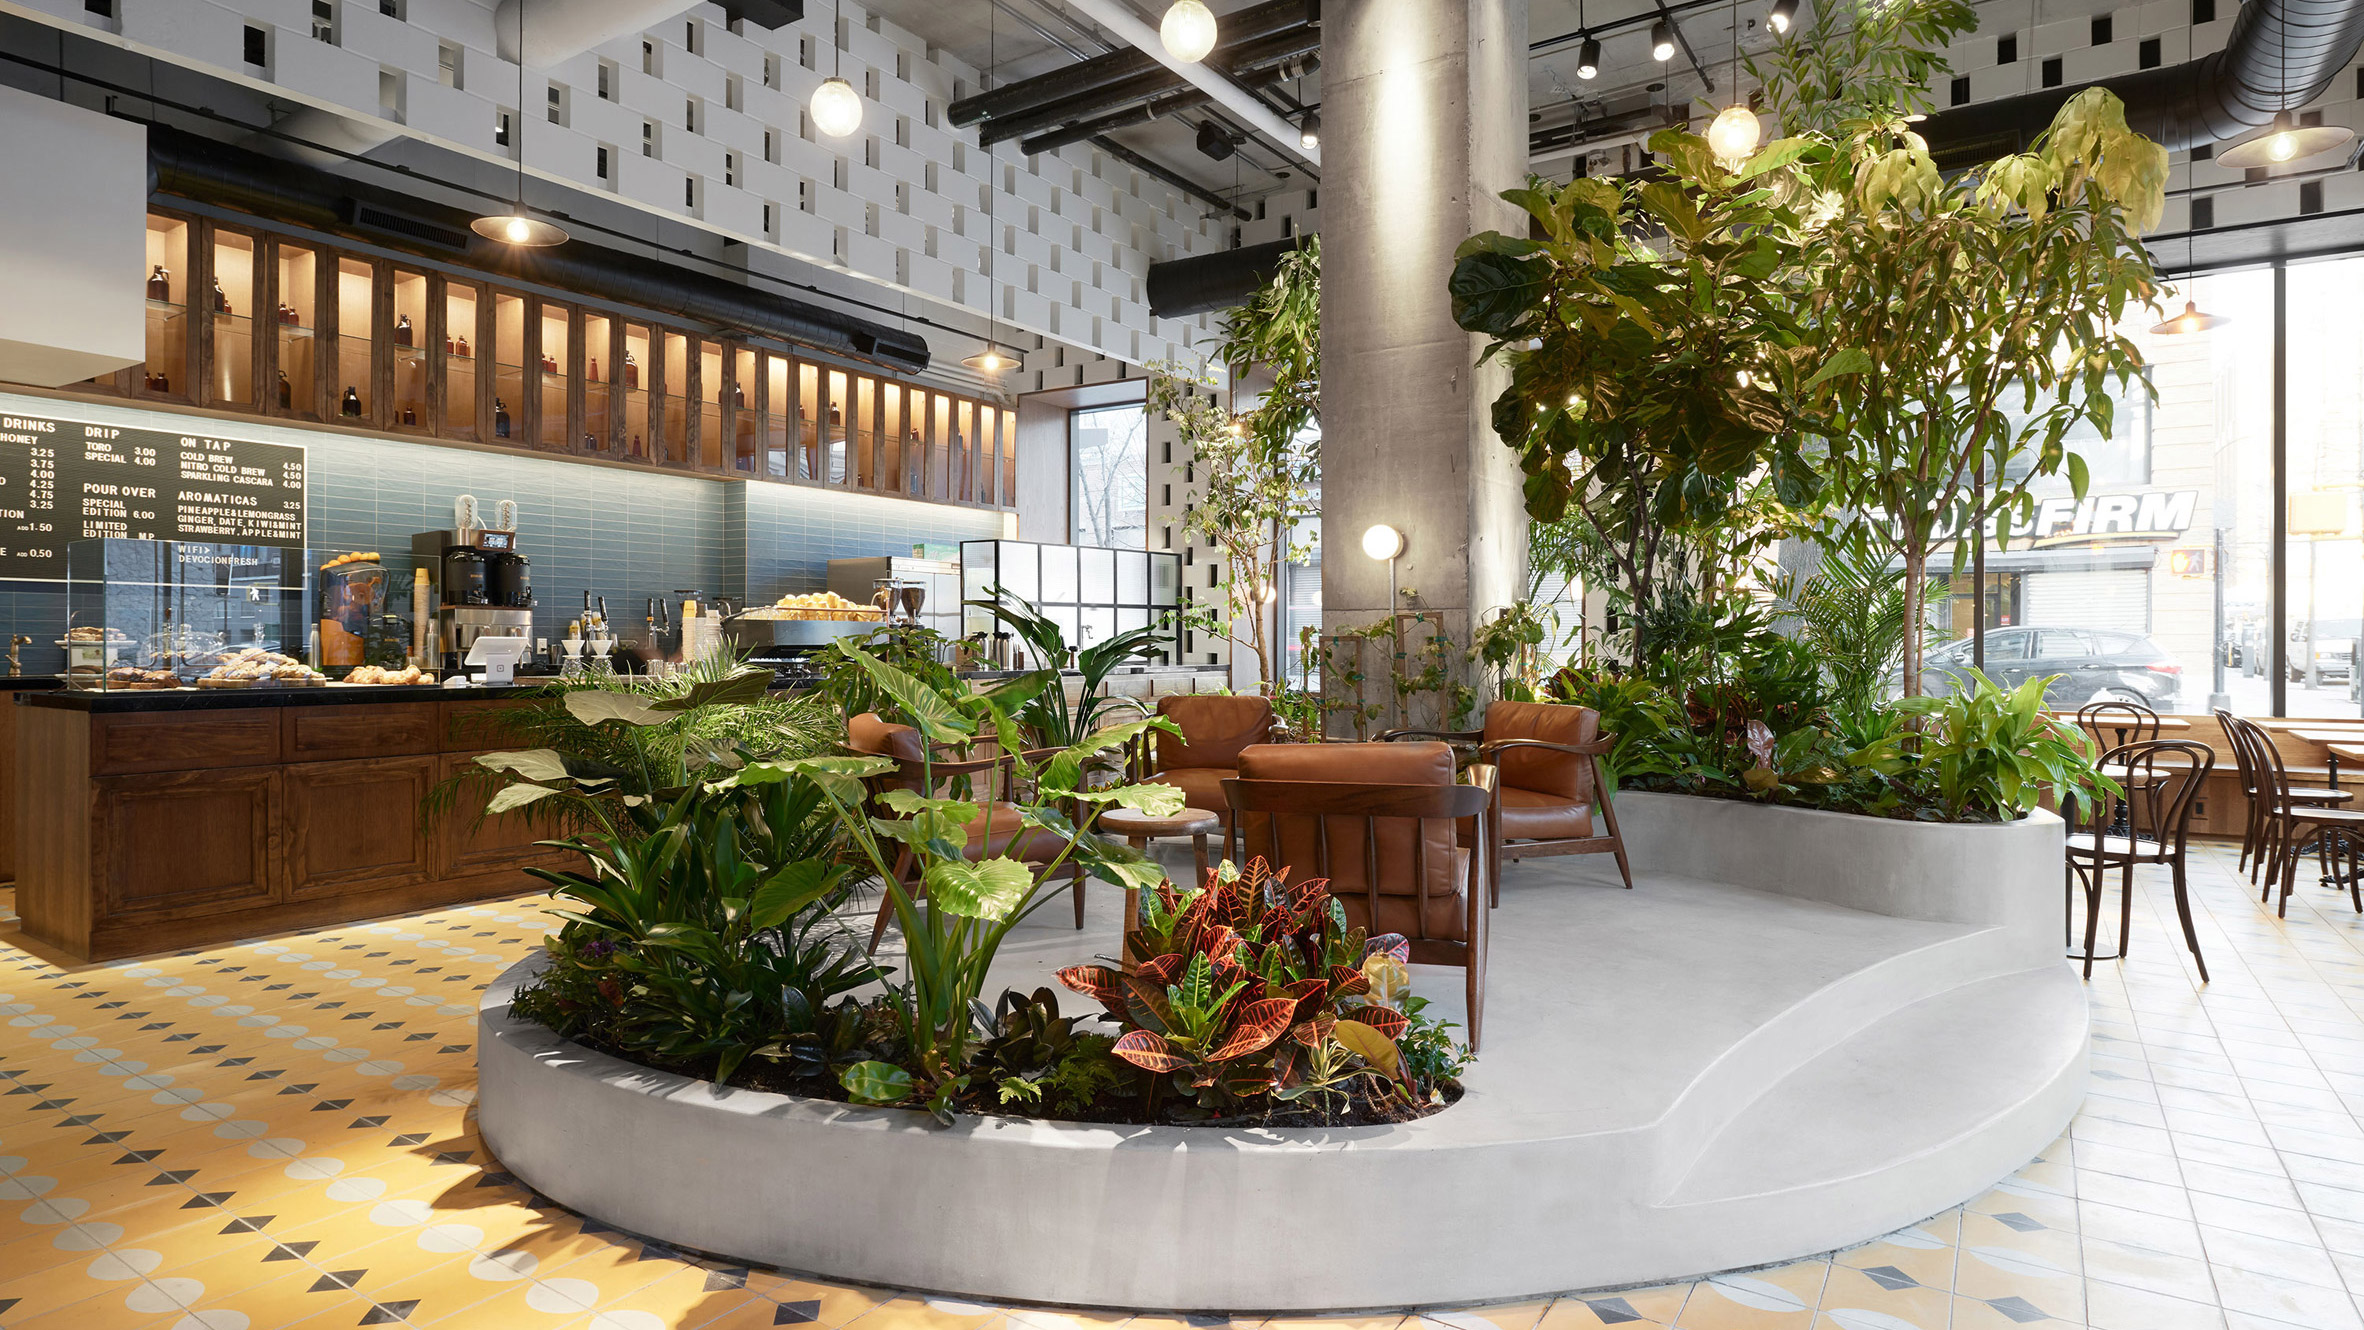 LOT creates tropical garden within Brooklyn coffee house Devoción